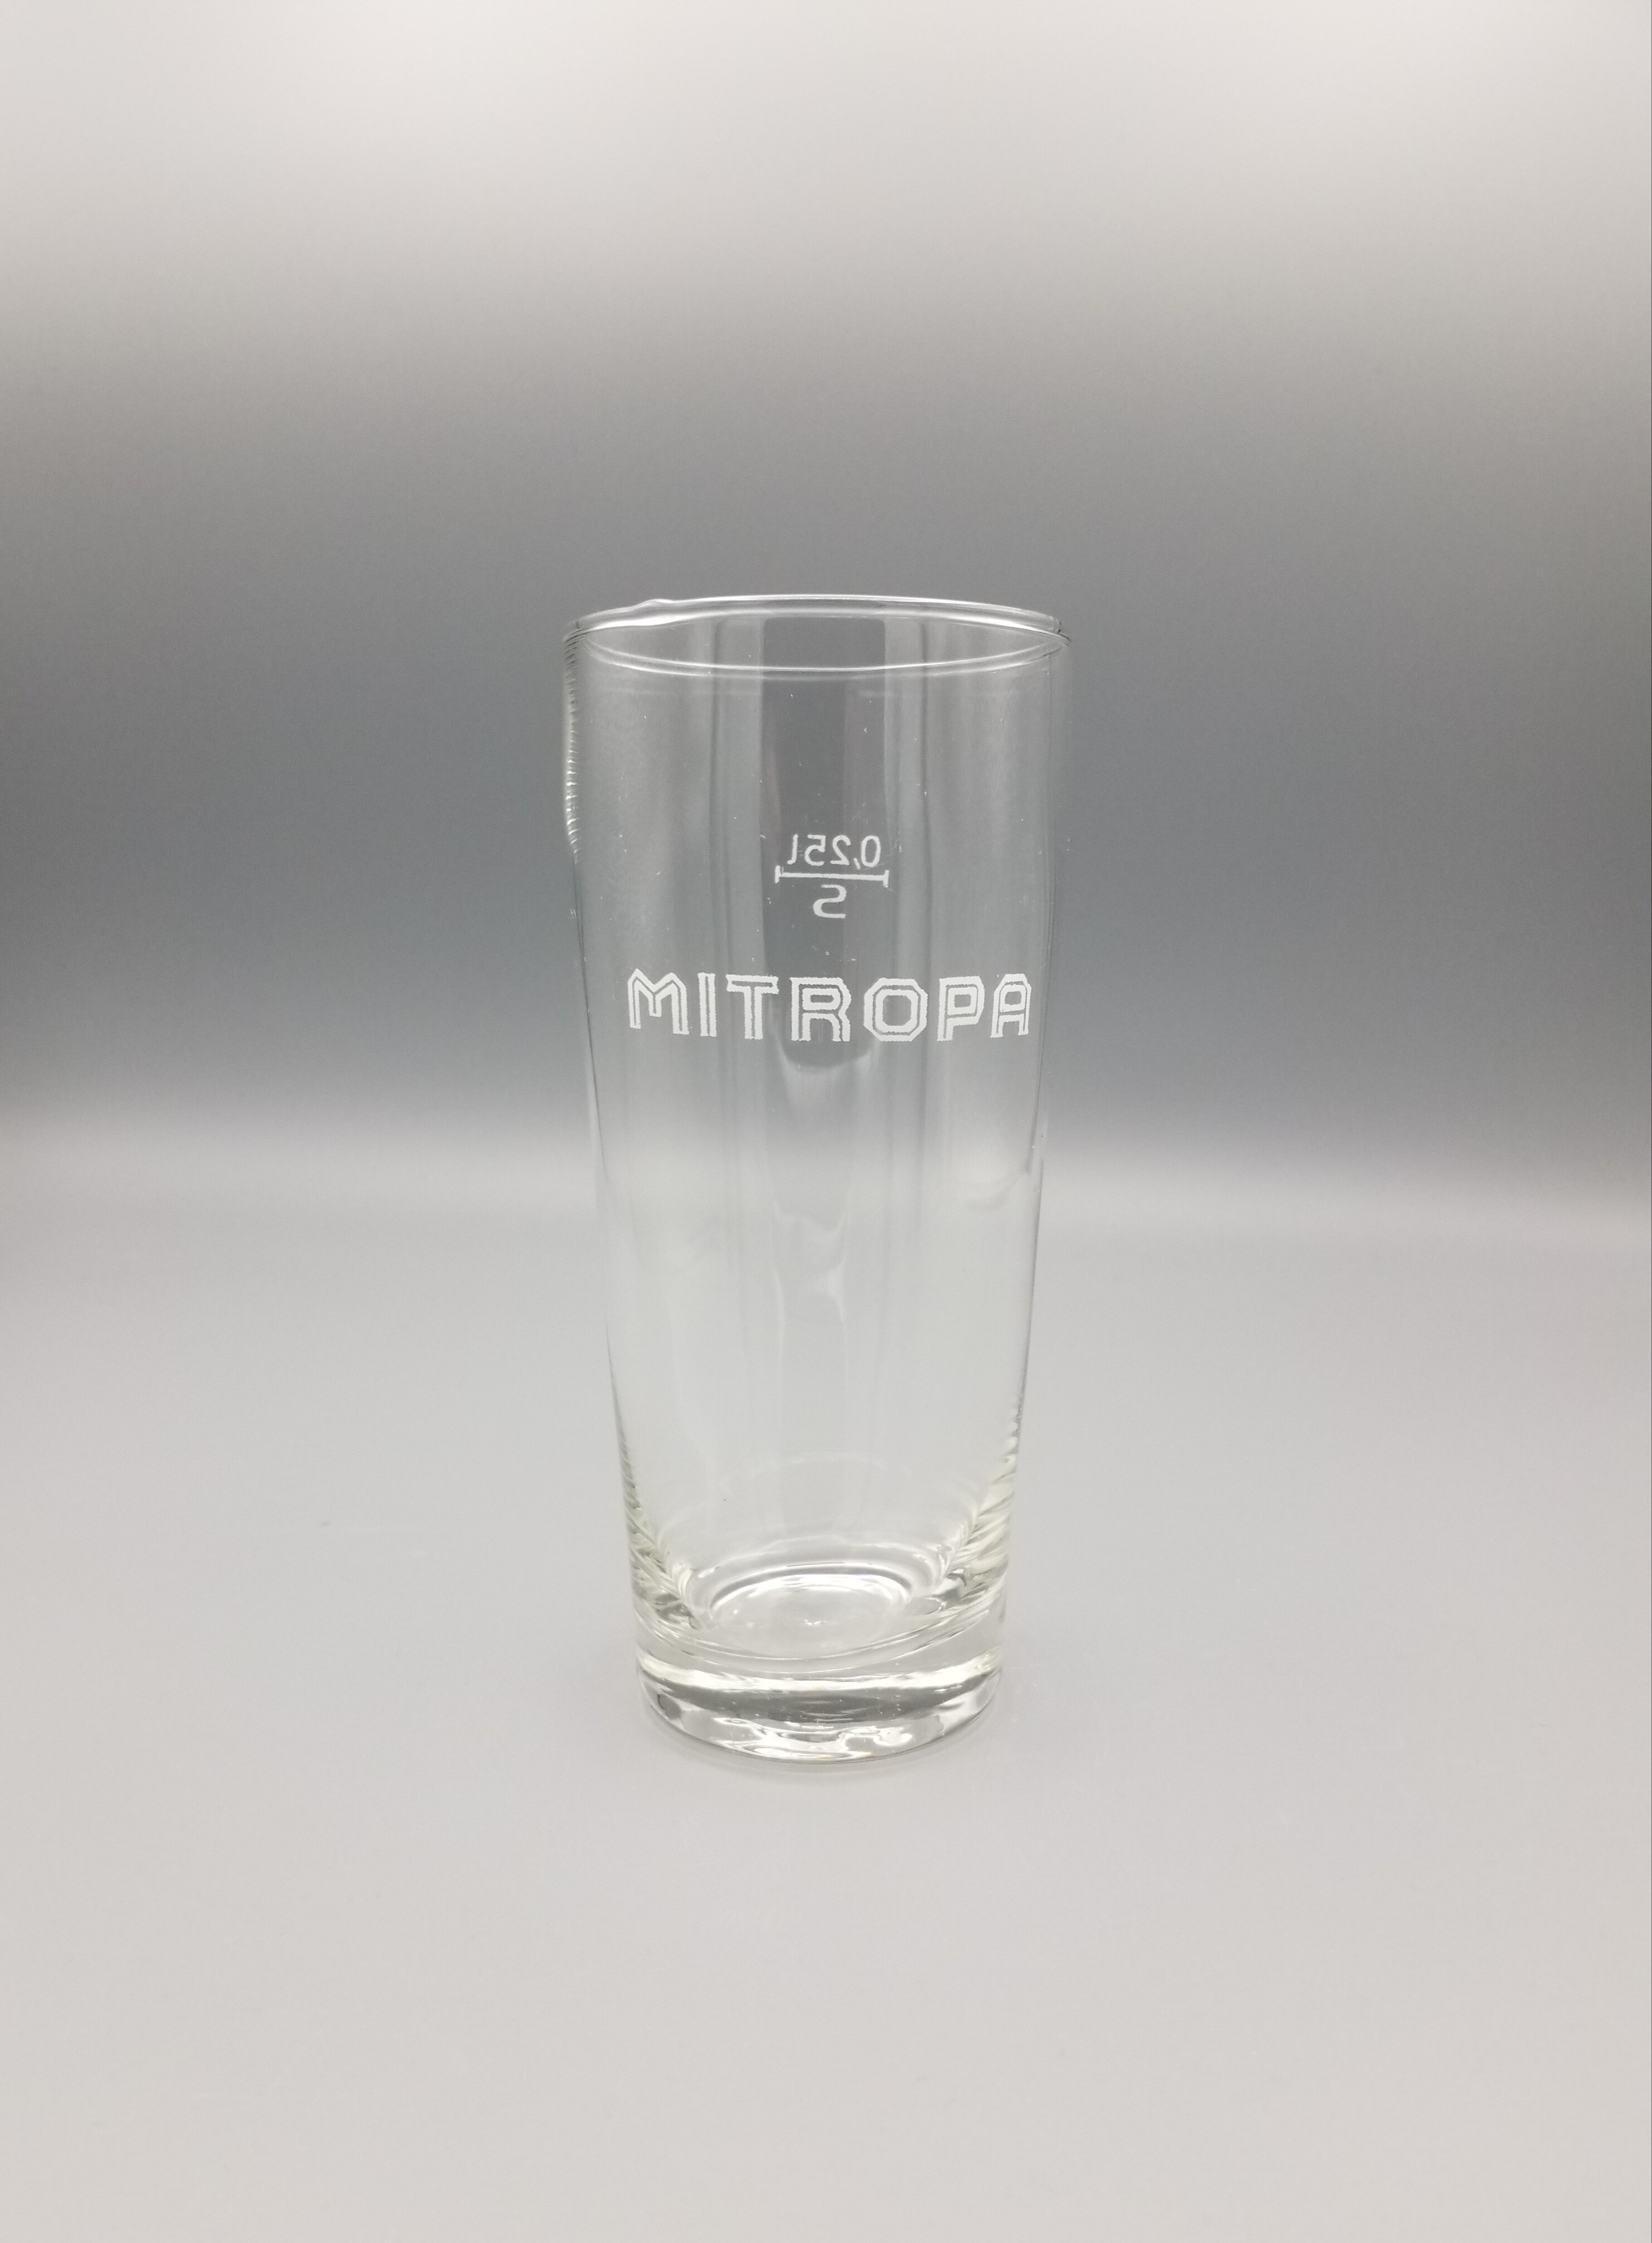 MITROPA Trinkglas (Mobile Welten e.V. CC BY-SA)